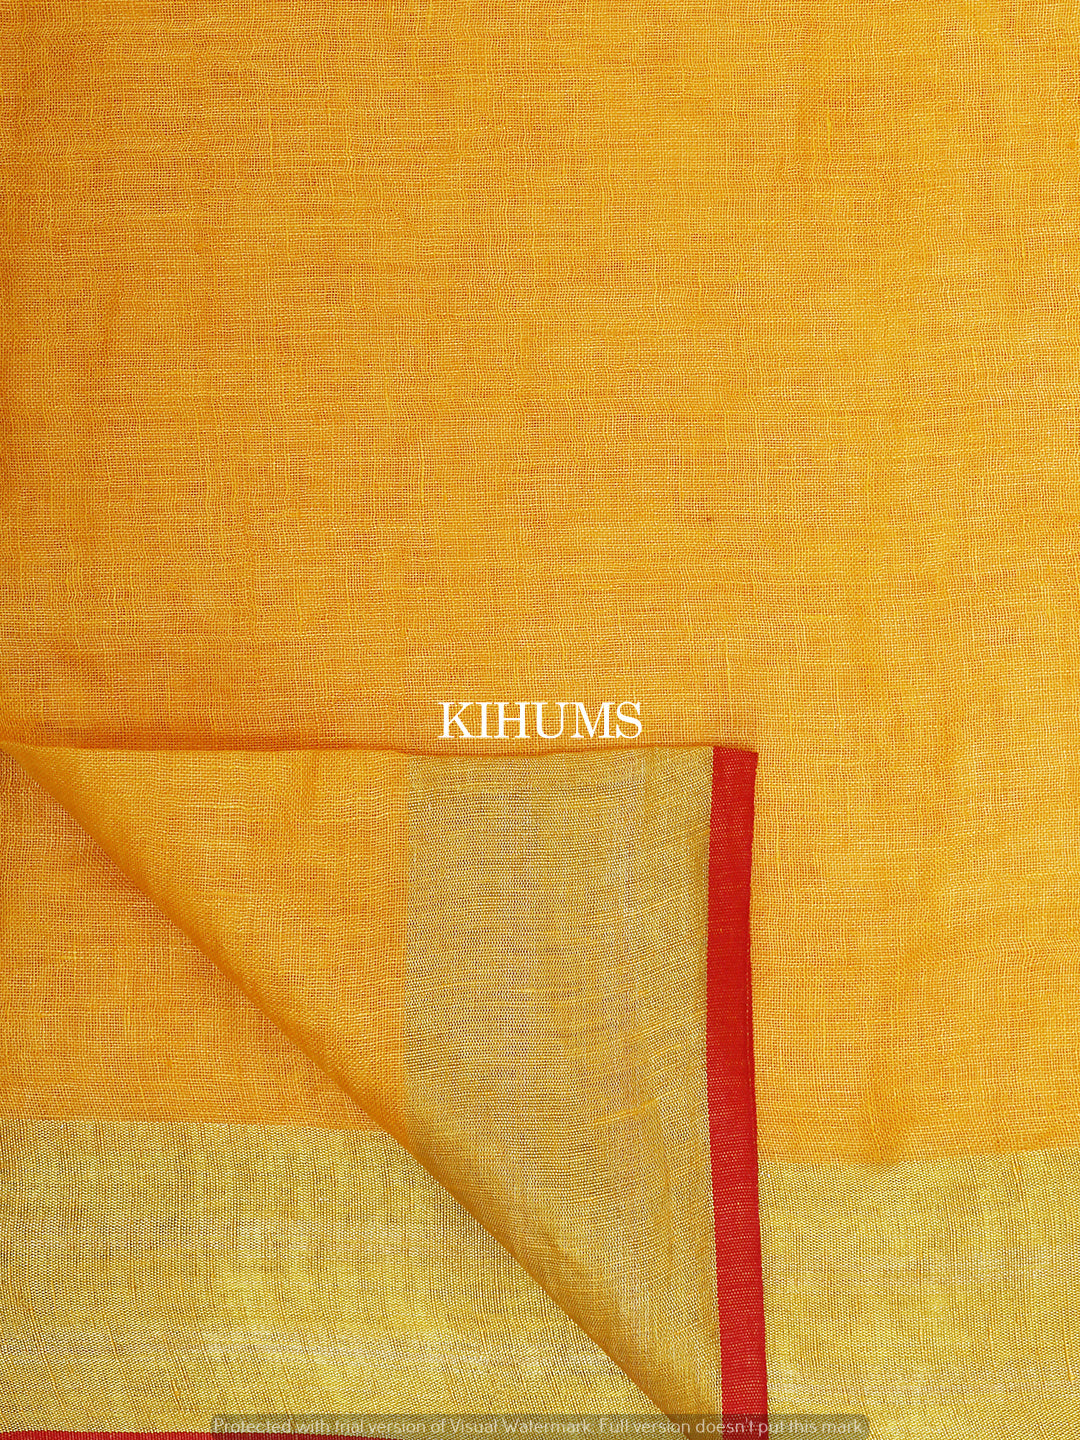 Yellow Handwoven Linen Saree | Gold Zari and Red border | KIHUMS Saree